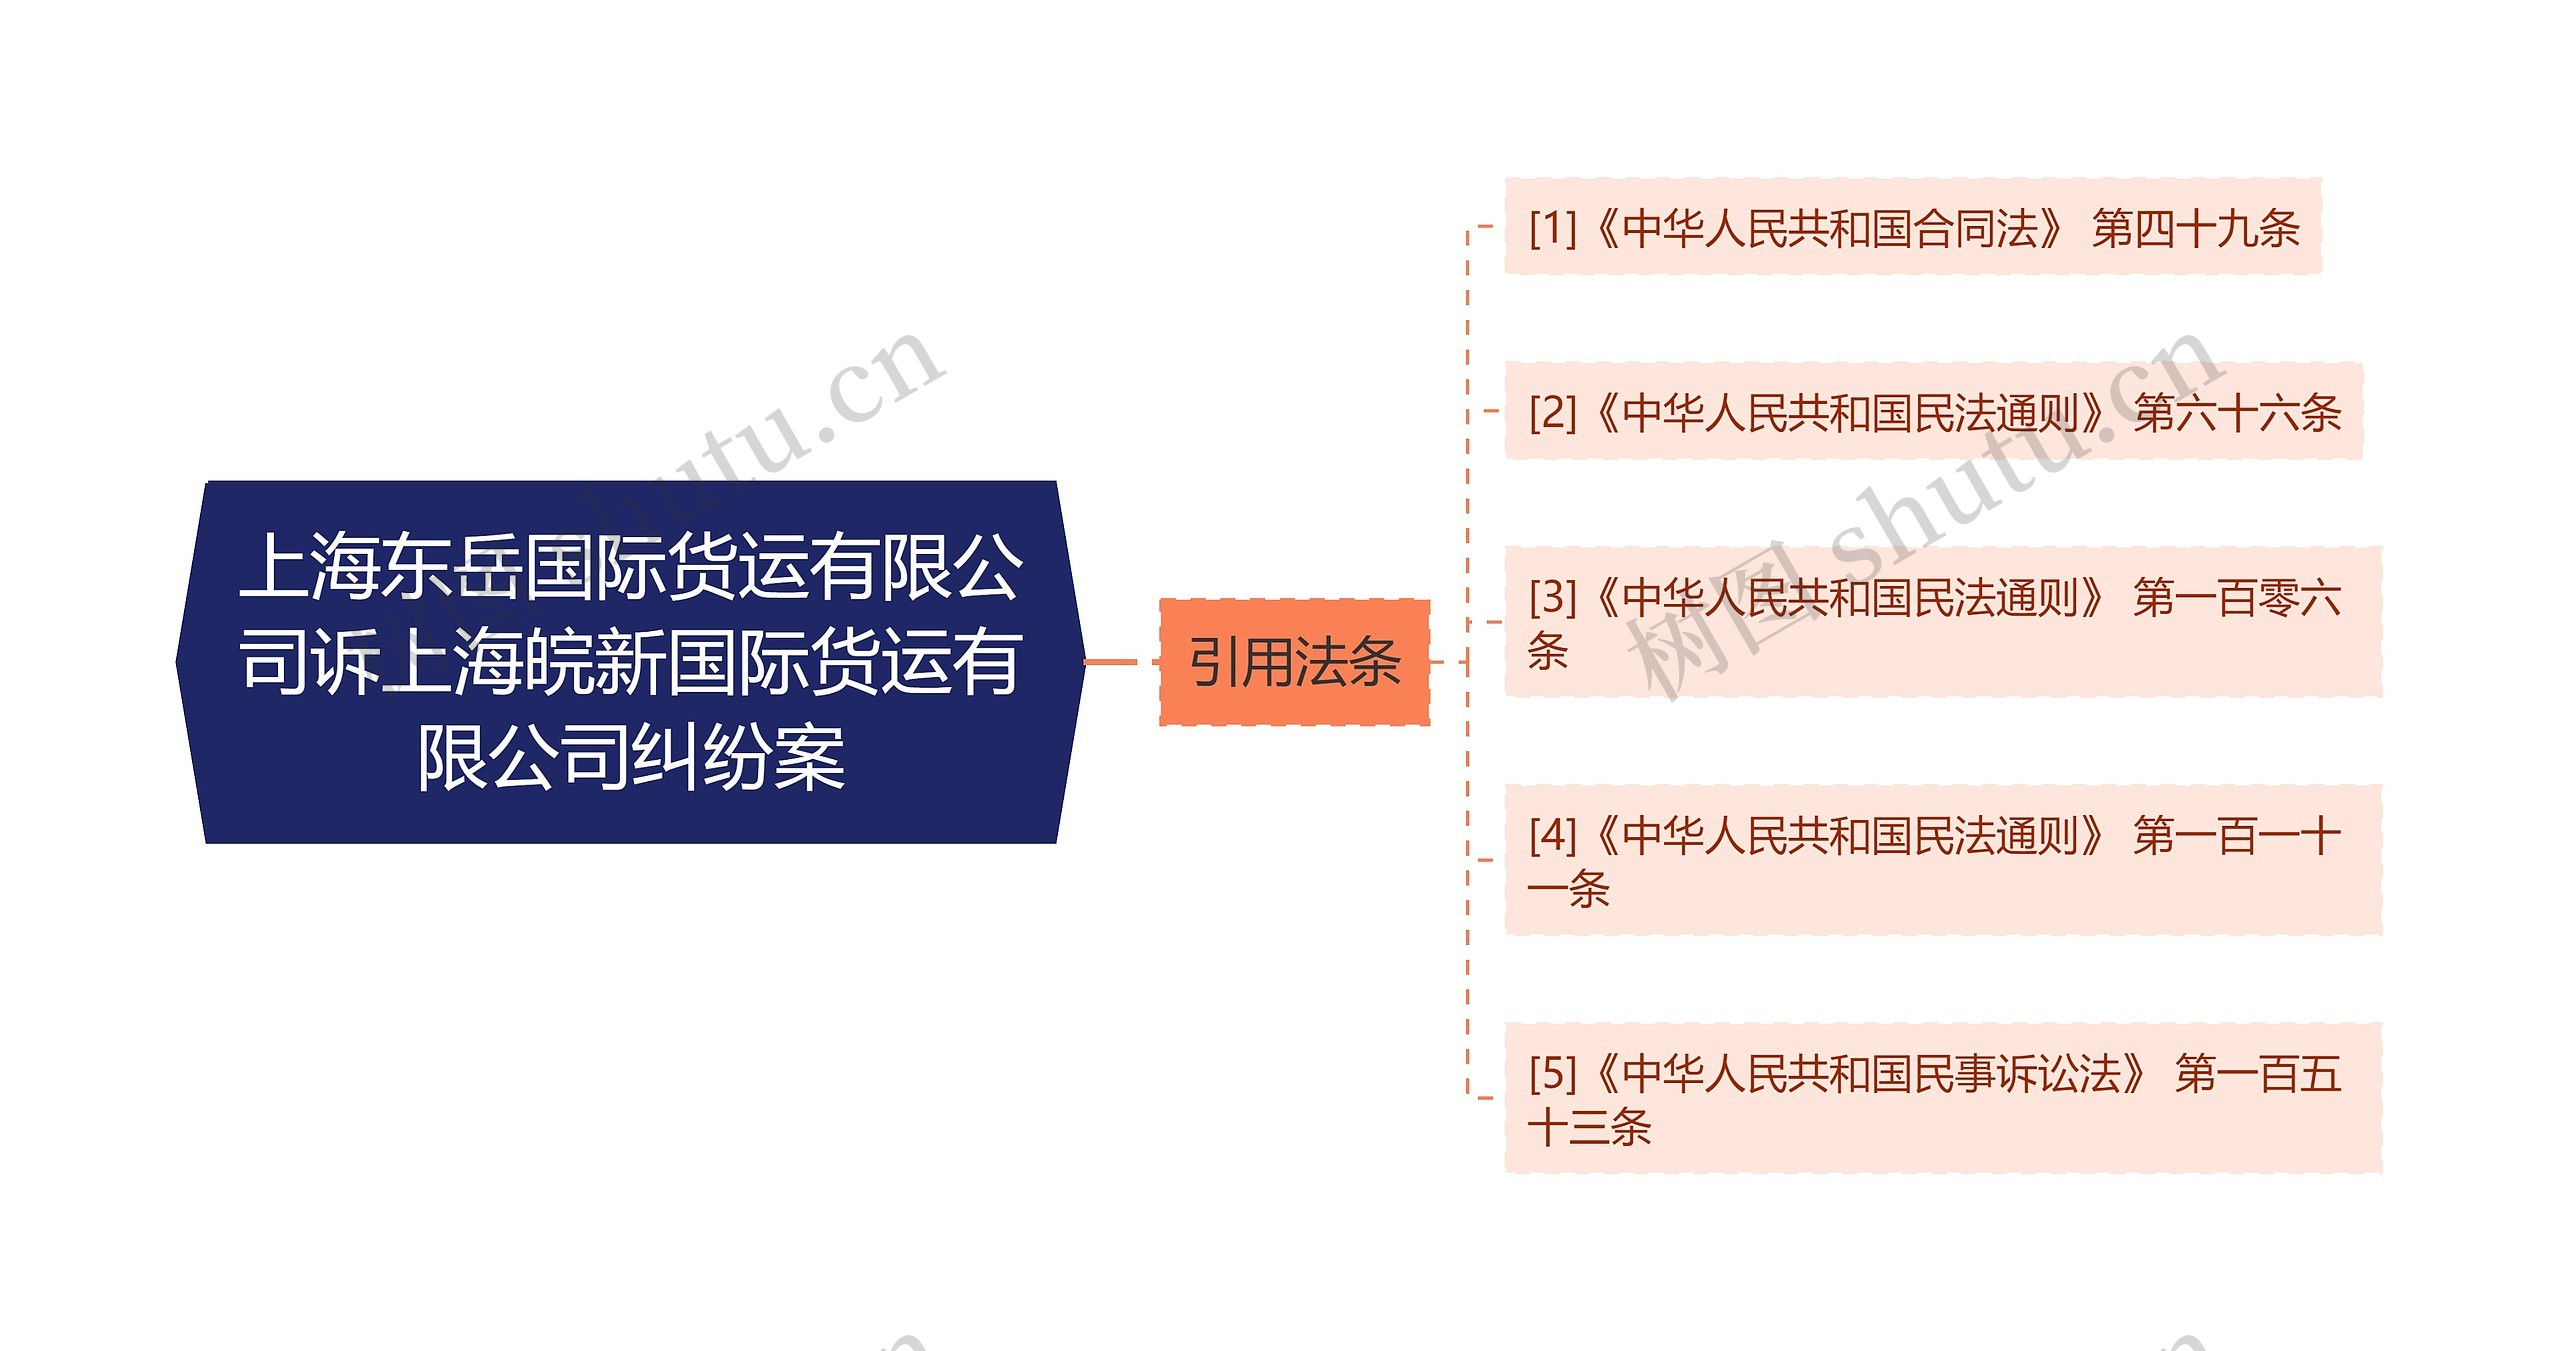 上海东岳国际货运有限公司诉上海皖新国际货运有限公司纠纷案